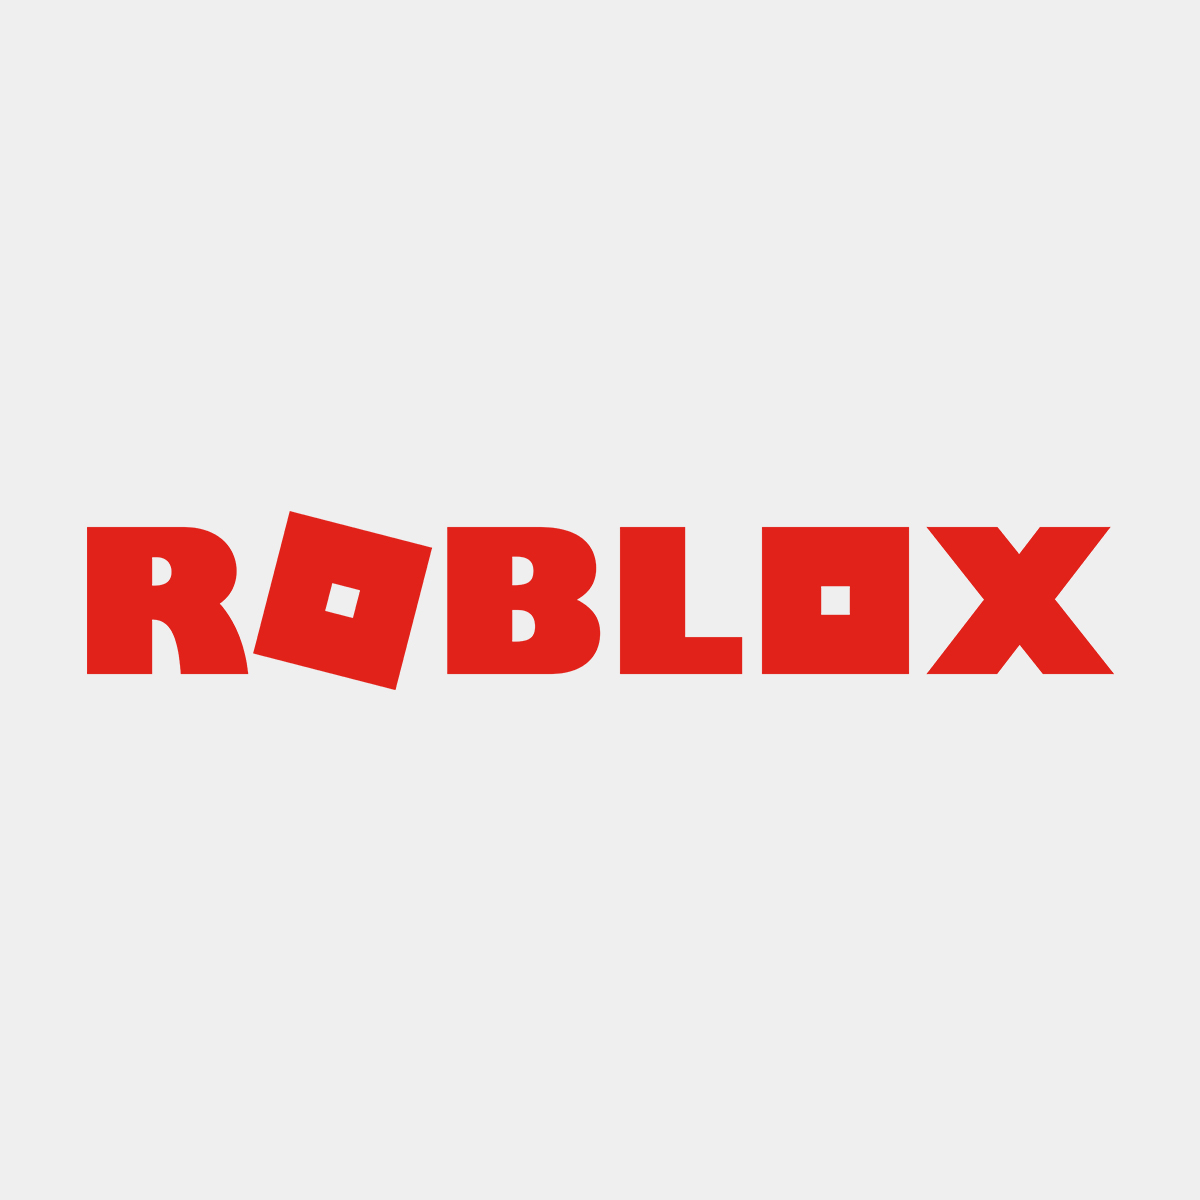 Cool Roblox Game Logos